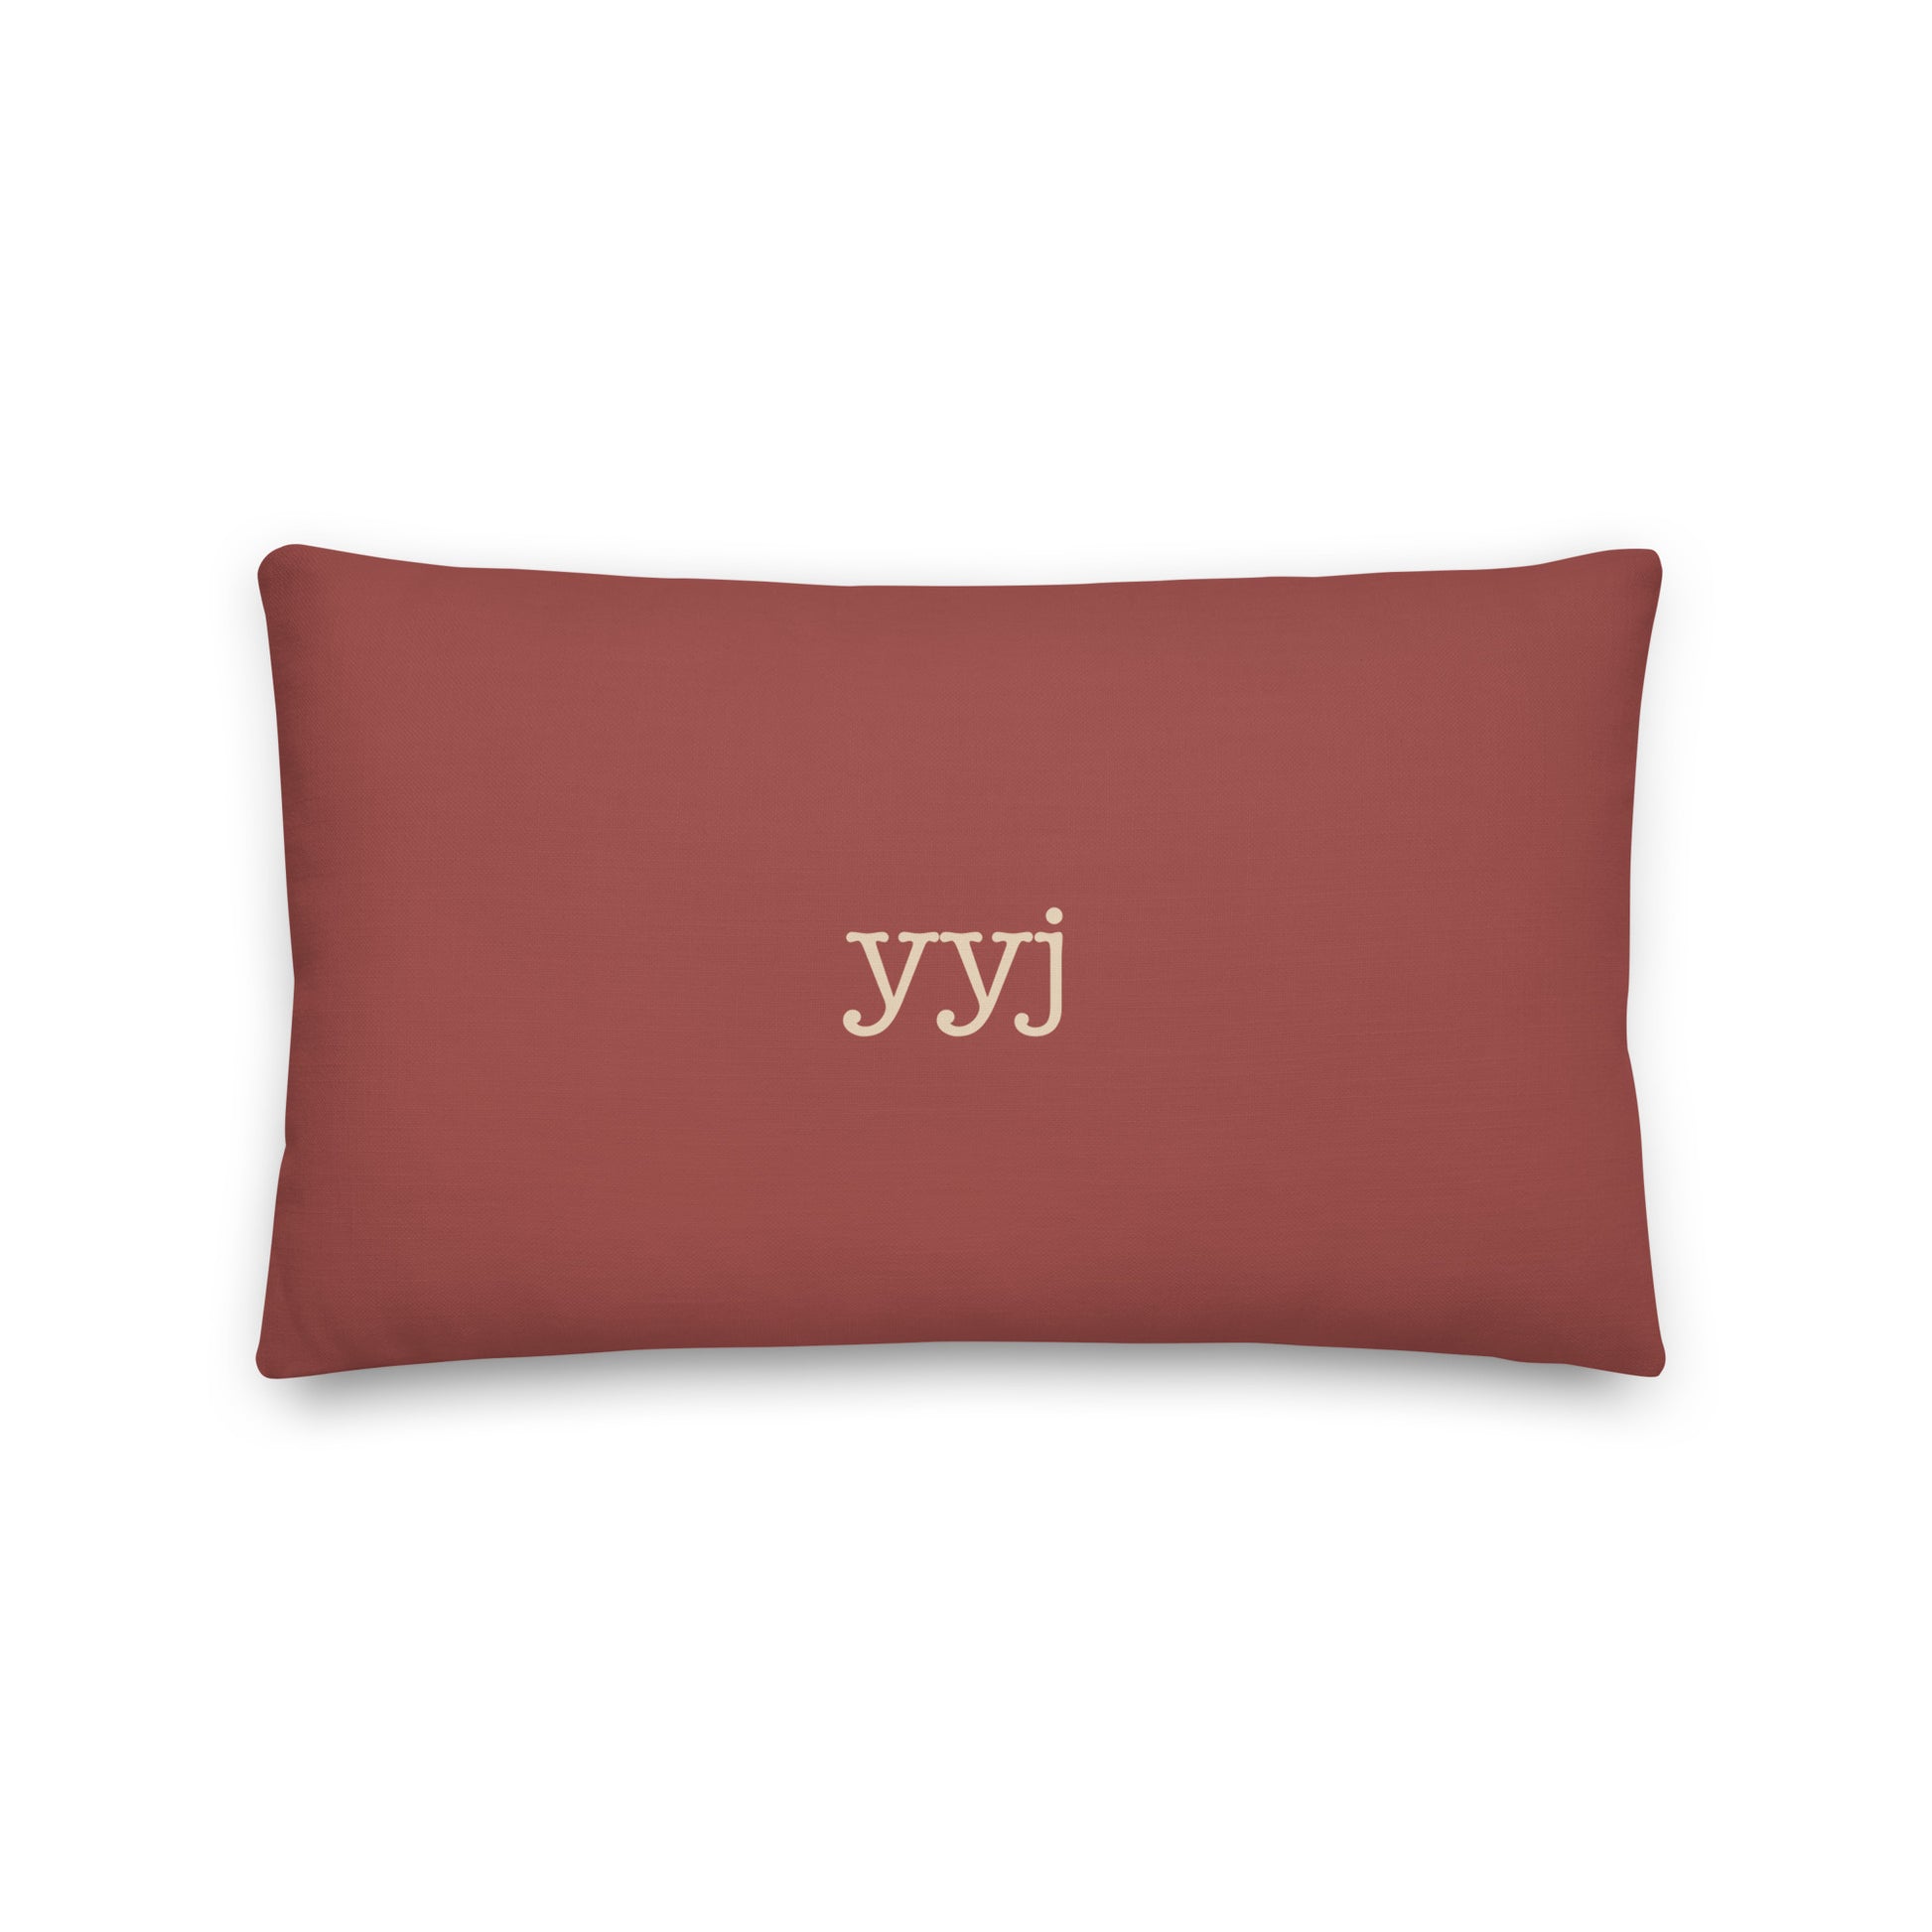 Typewriter Pillow - Terra Cotta • YYJ Victoria • YHM Designs - Image 02